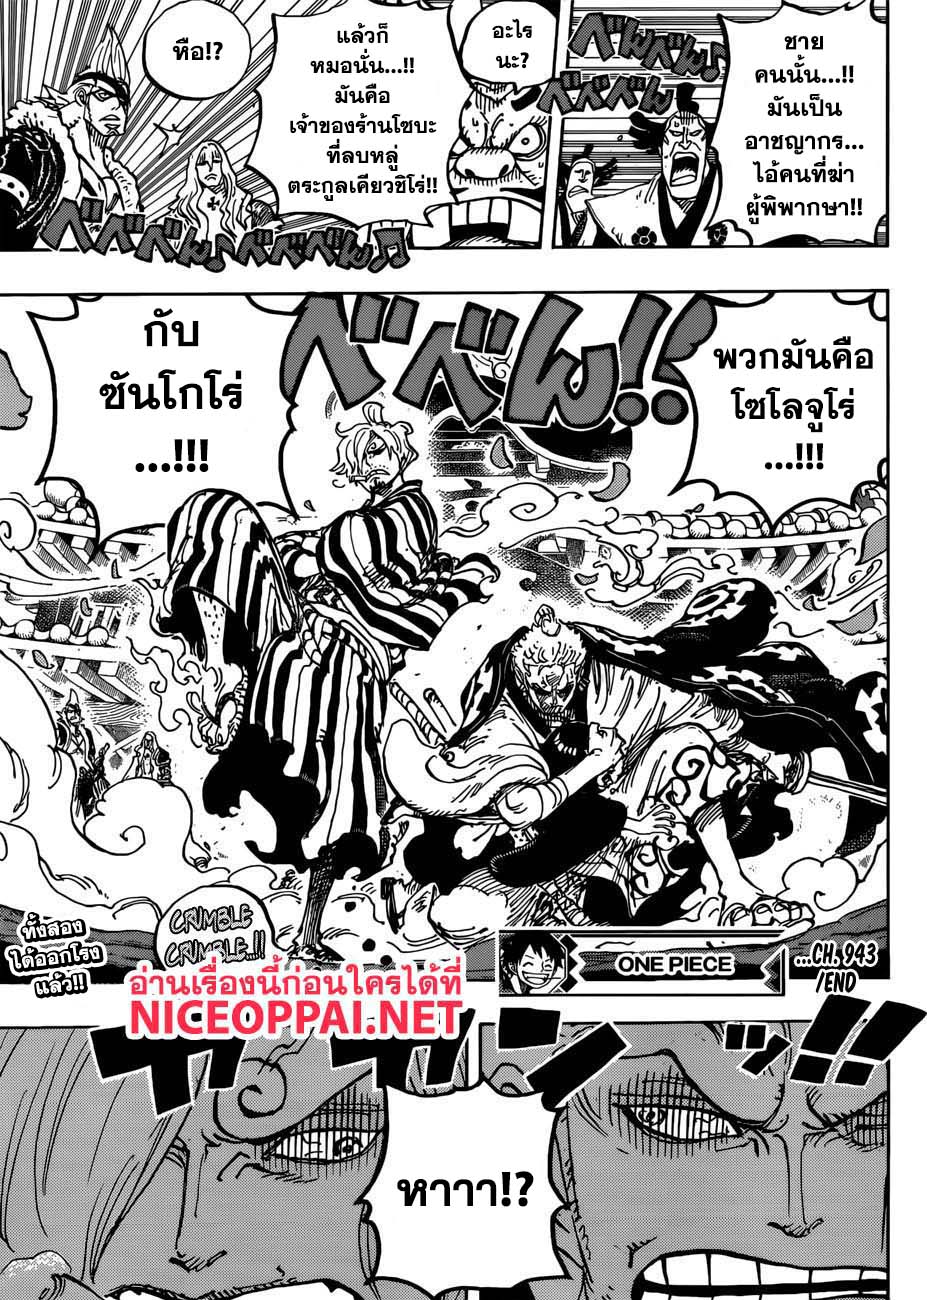 One Piece วันพีซ ตอนที่ 943 : SMILE